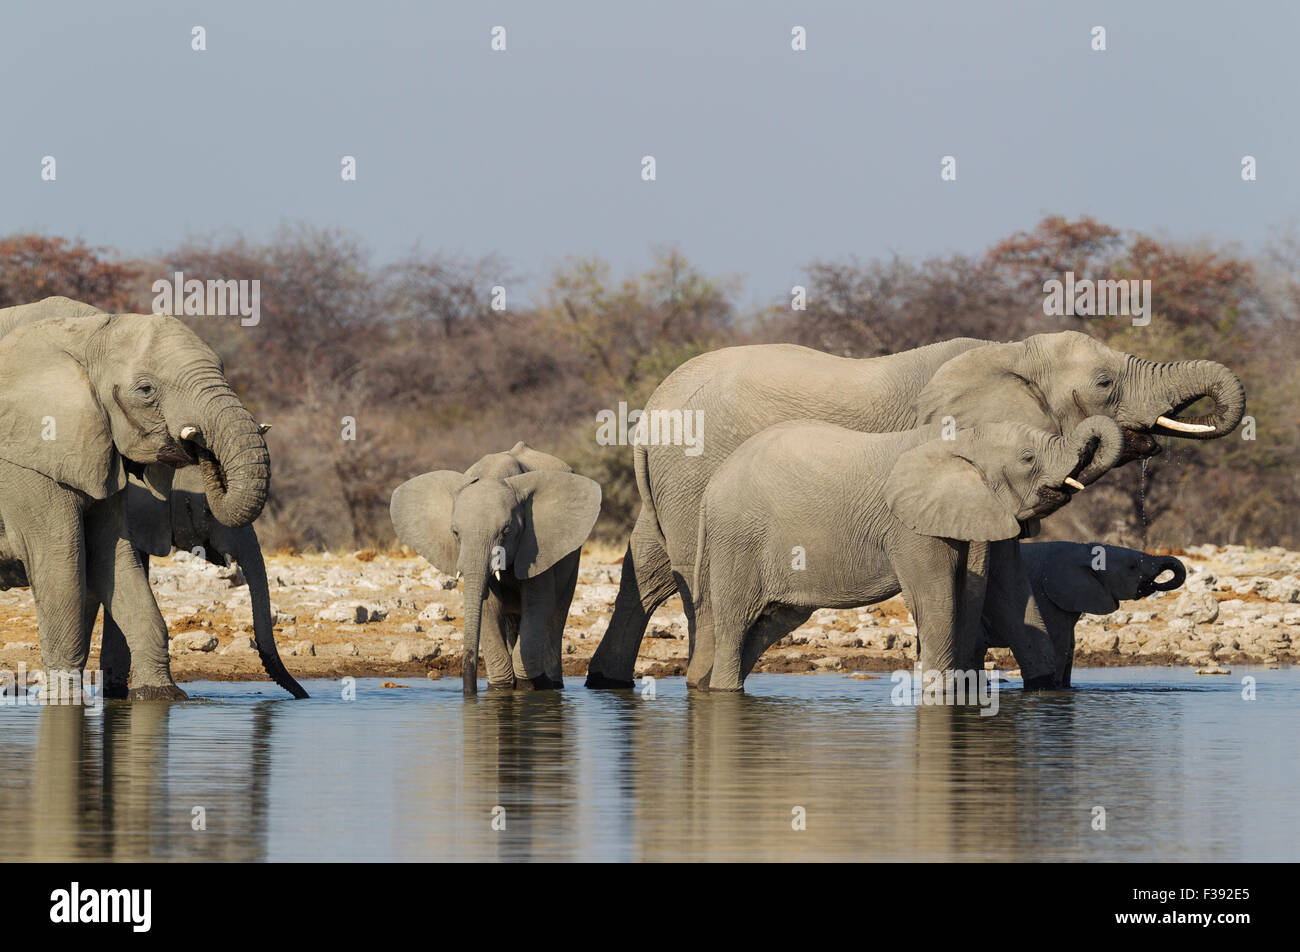 African elephant (Loxodonta africana), breeding herd at waterhole, Etosha National Park, Namibia Stock Photo